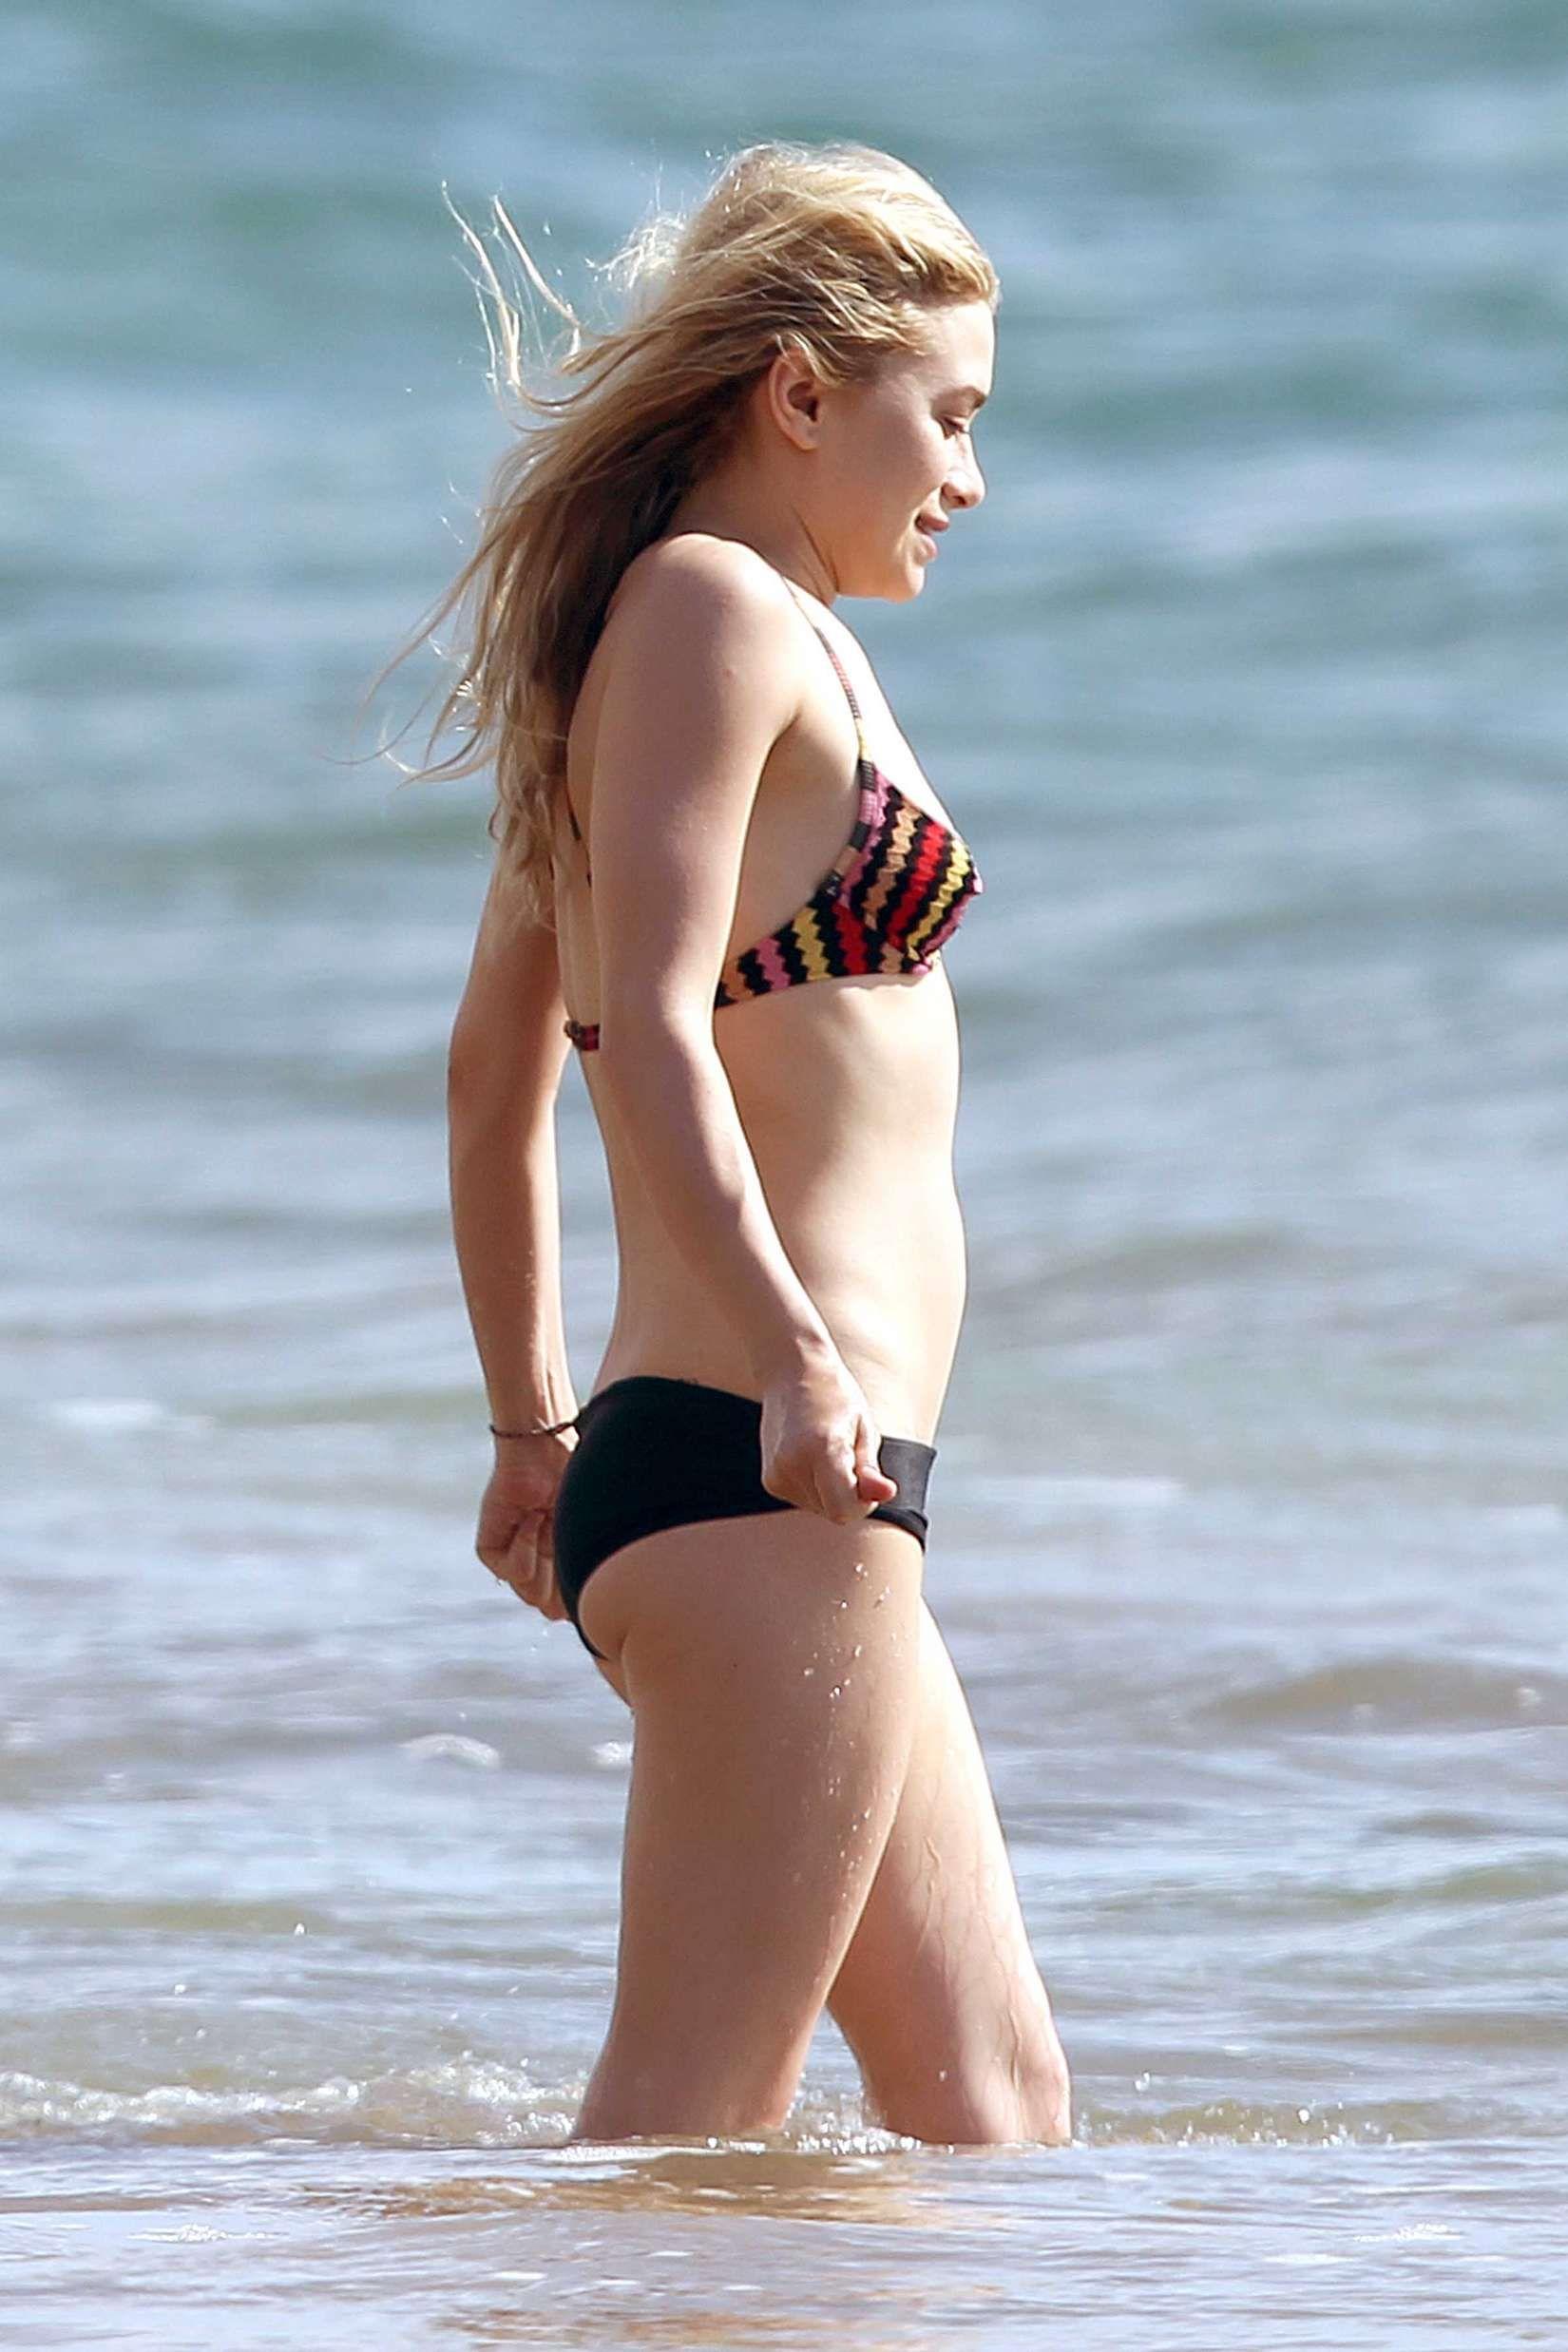 Olsen bikini pics  photo